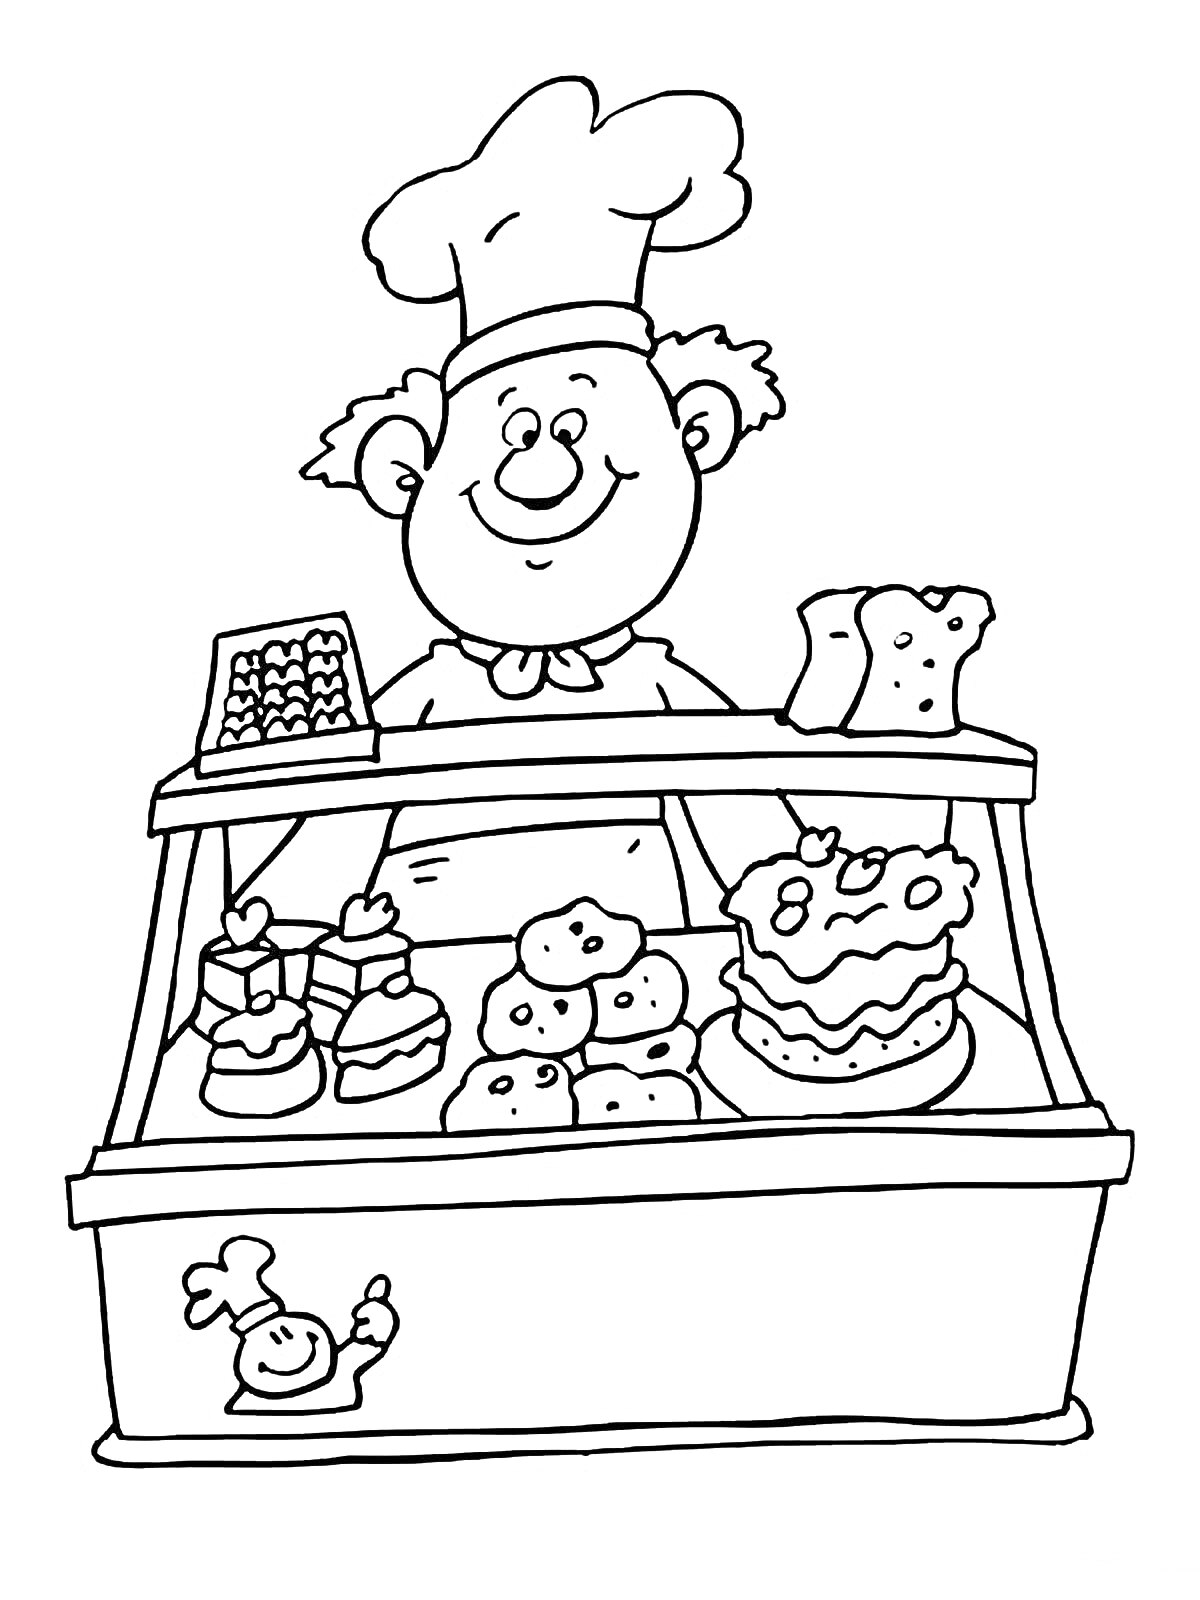 Повар-кондитер за прилавком с выпечкой и кассовым аппаратом. На прилавке расположены пирожные, кексы, торт и буханки хлеба.